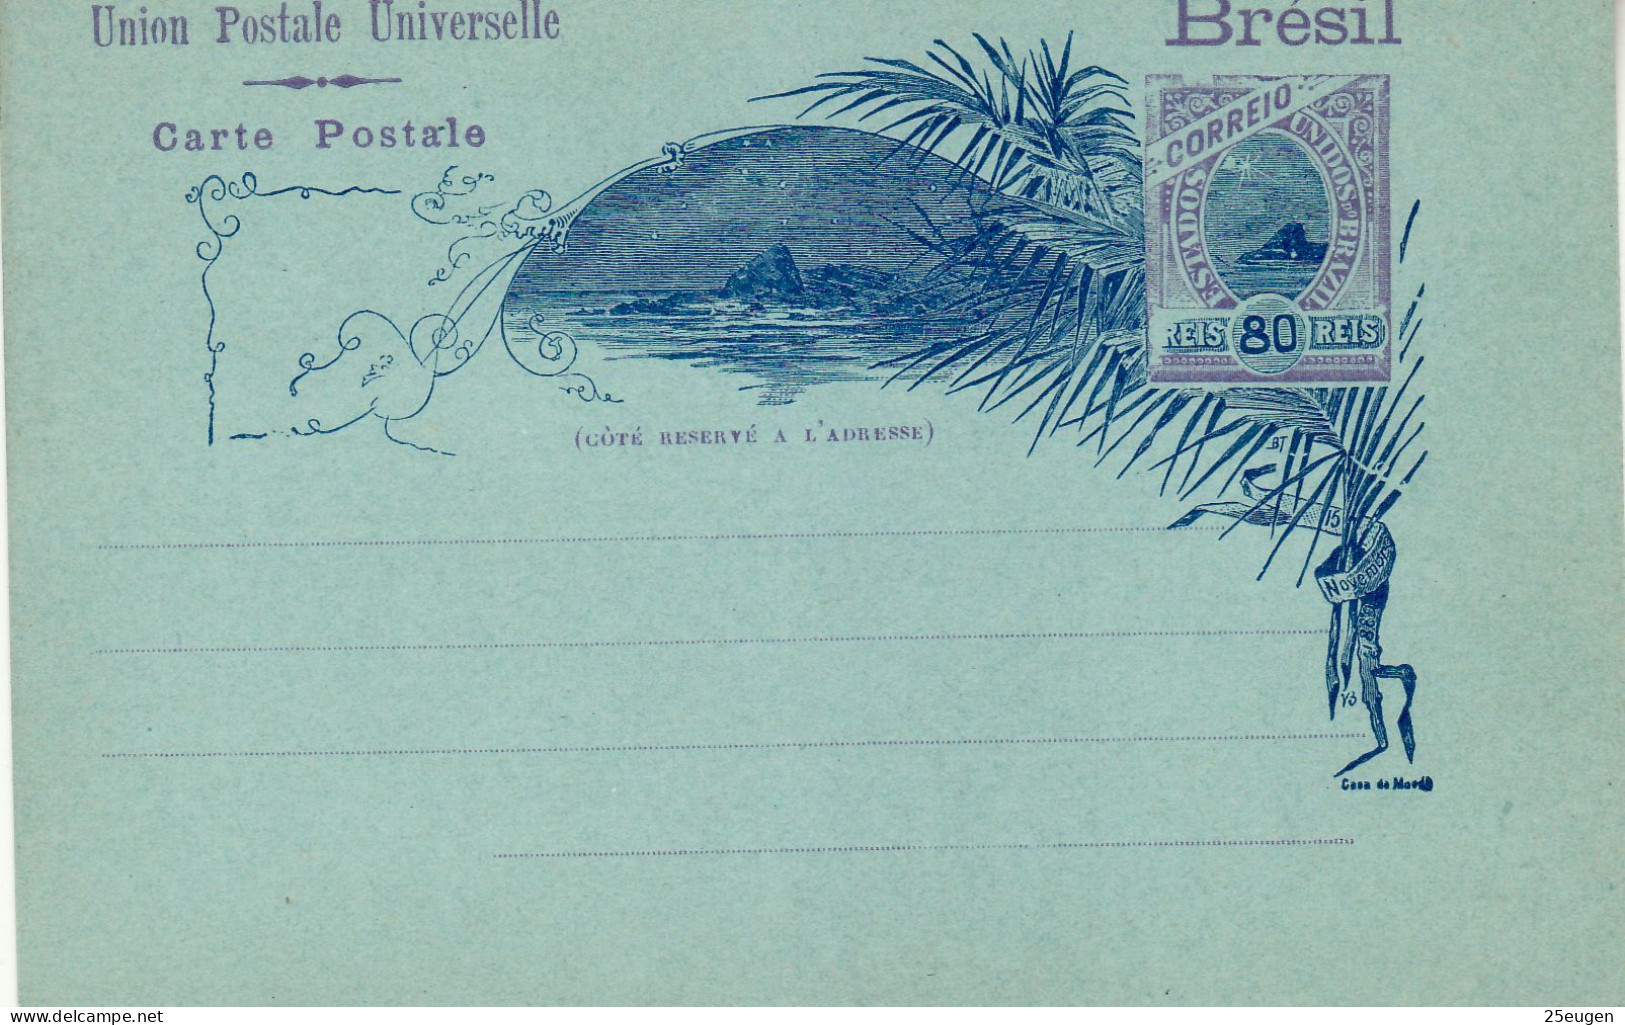 BRAZIL 1896 POSTCARD UNUSED - Postal Stationery